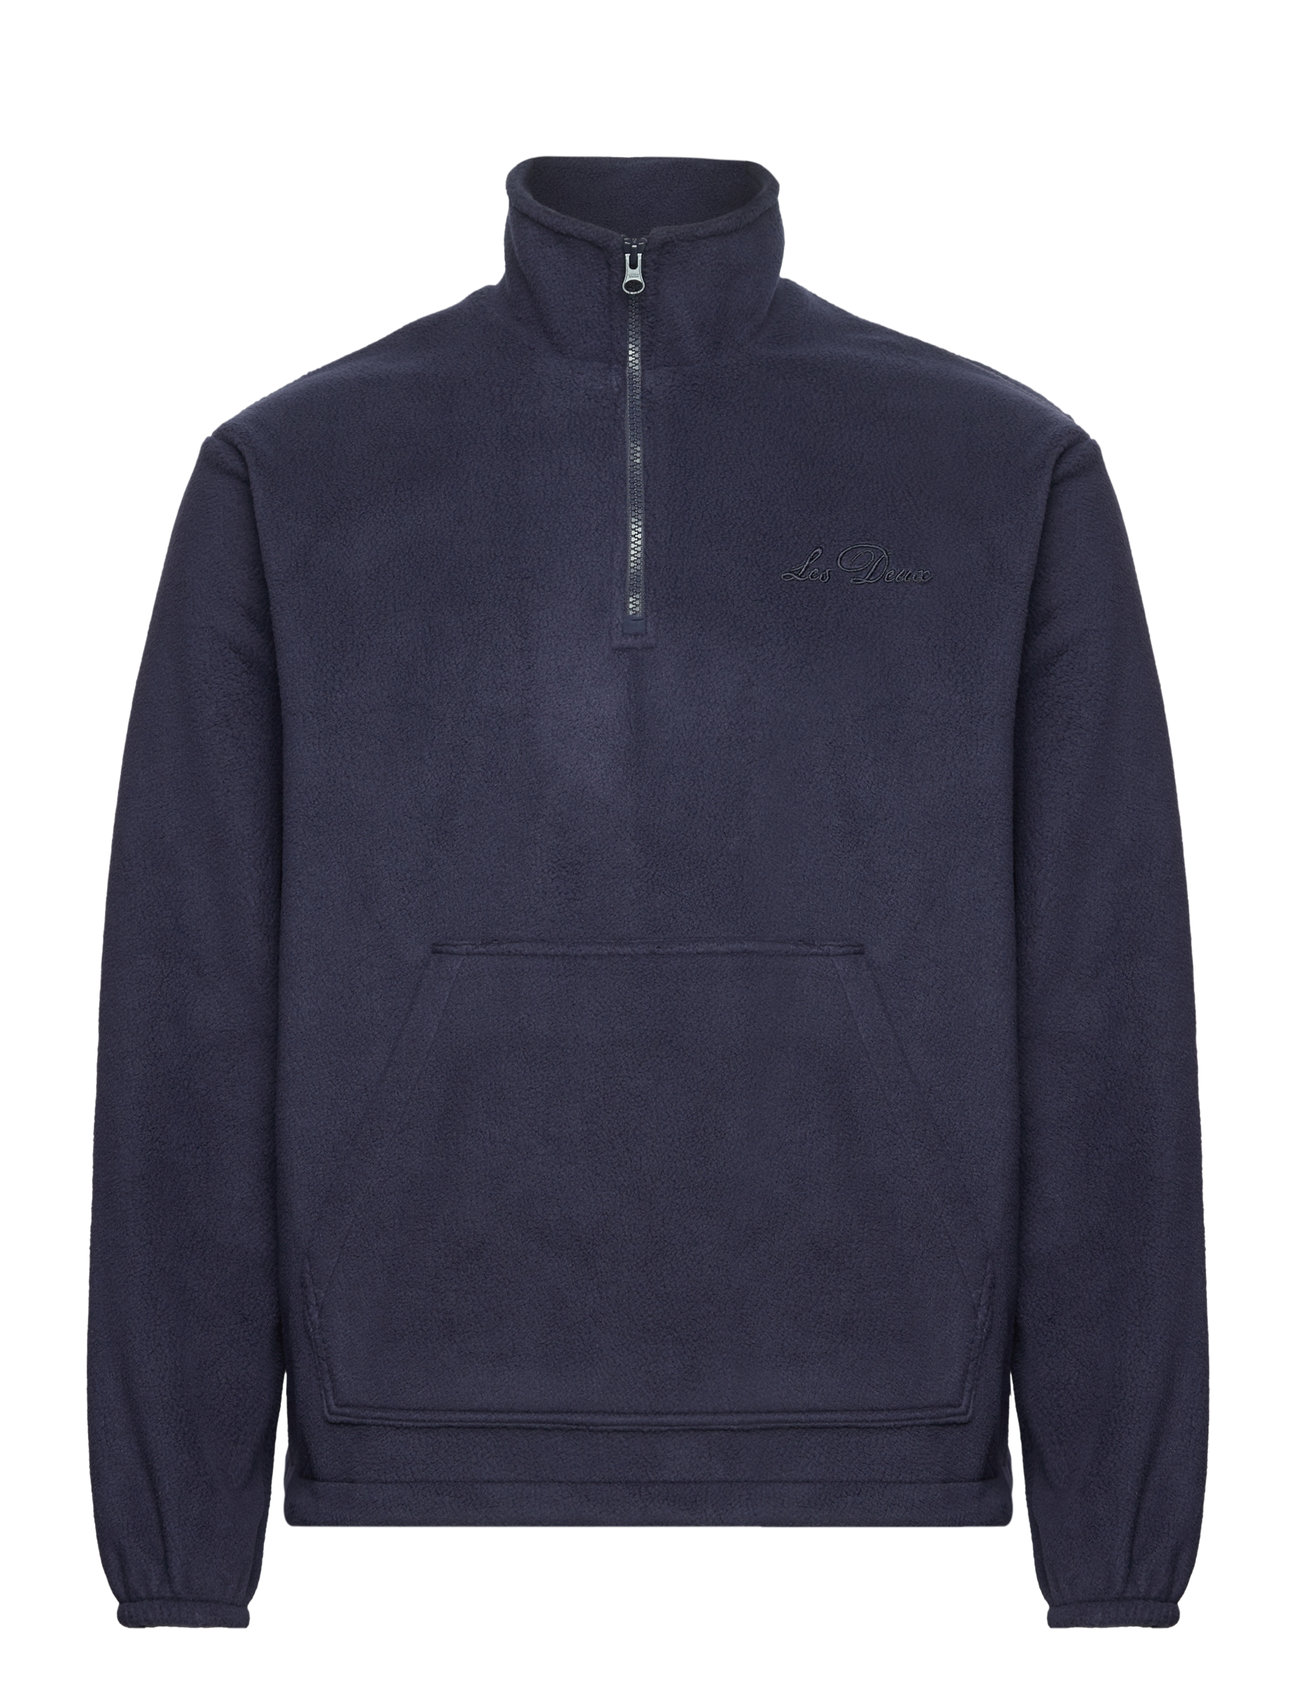 Duke Fleece Half-Zip Sweatshirt Tops Sweat-shirts & Hoodies Fleeces & Midlayers Navy Les Deux